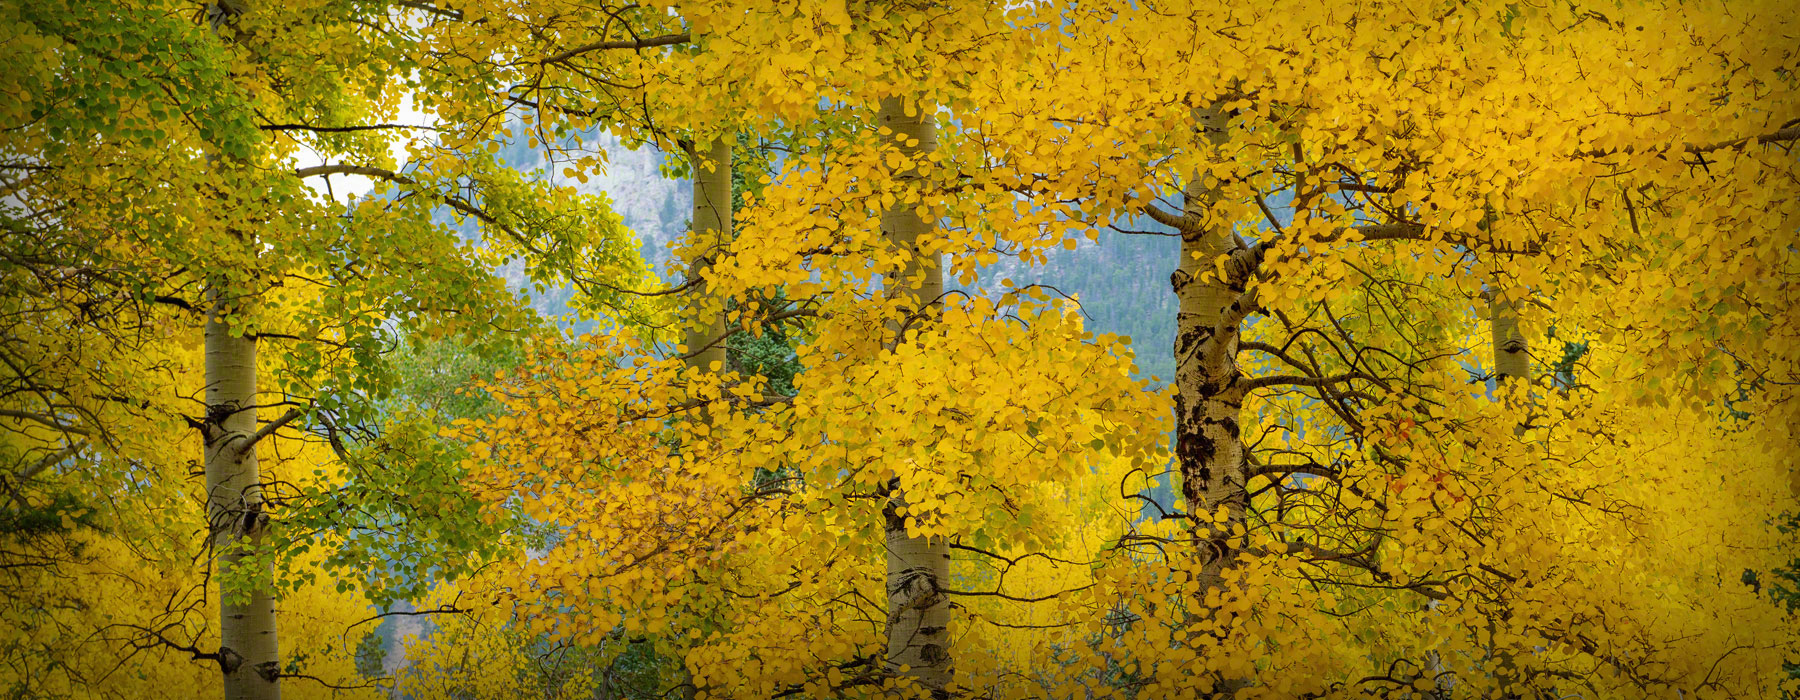 Rocky Mountain National Park Colorado Photos of Fall Colors